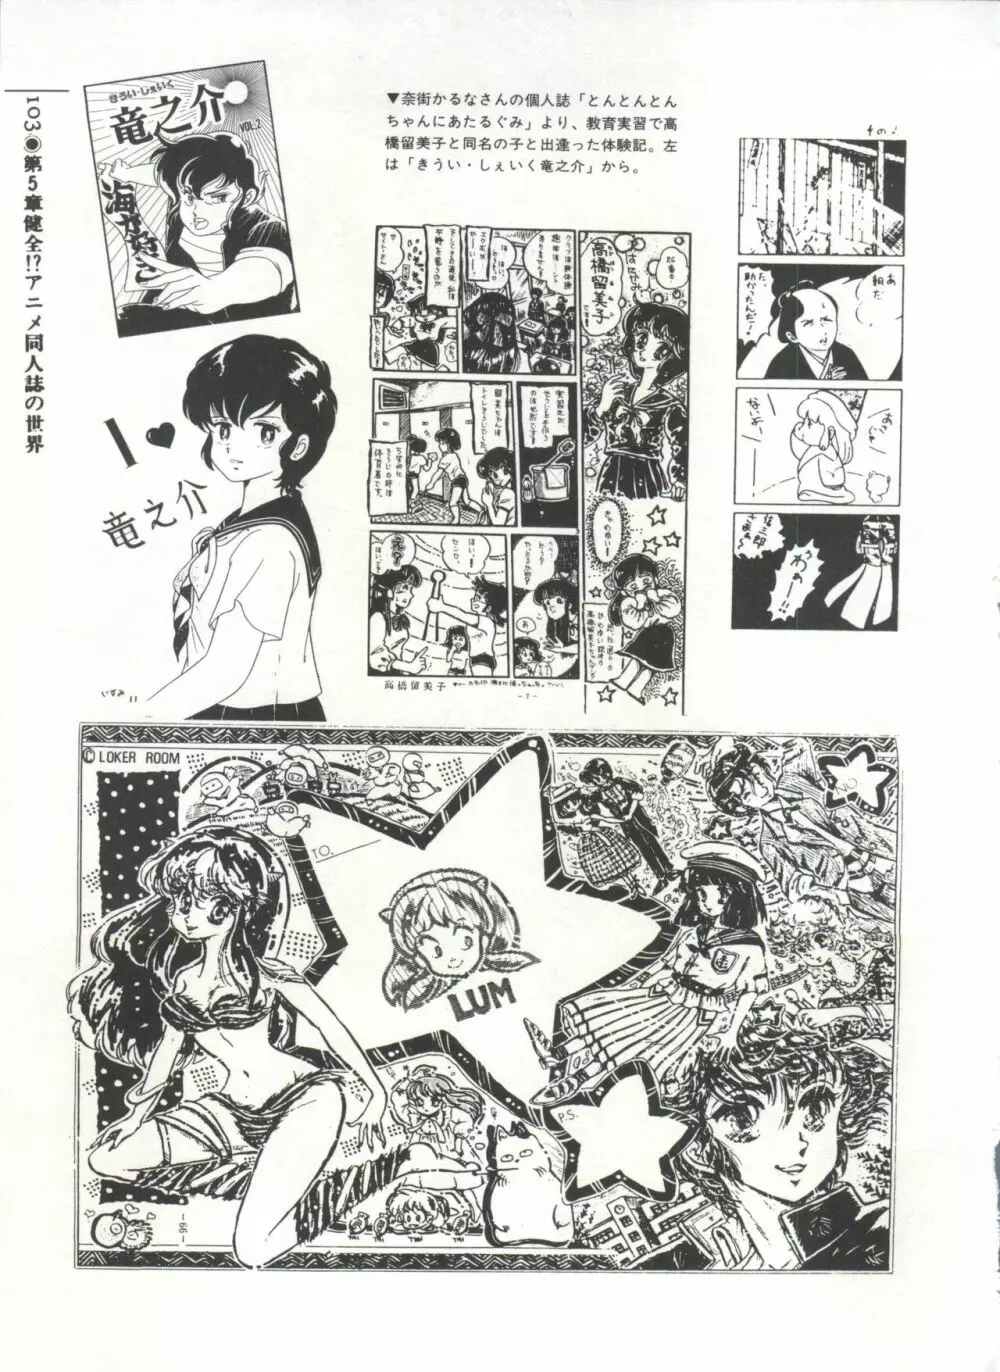 [Anthology] 美少女症候群(2) Lolita syndrome (よろず) 106ページ